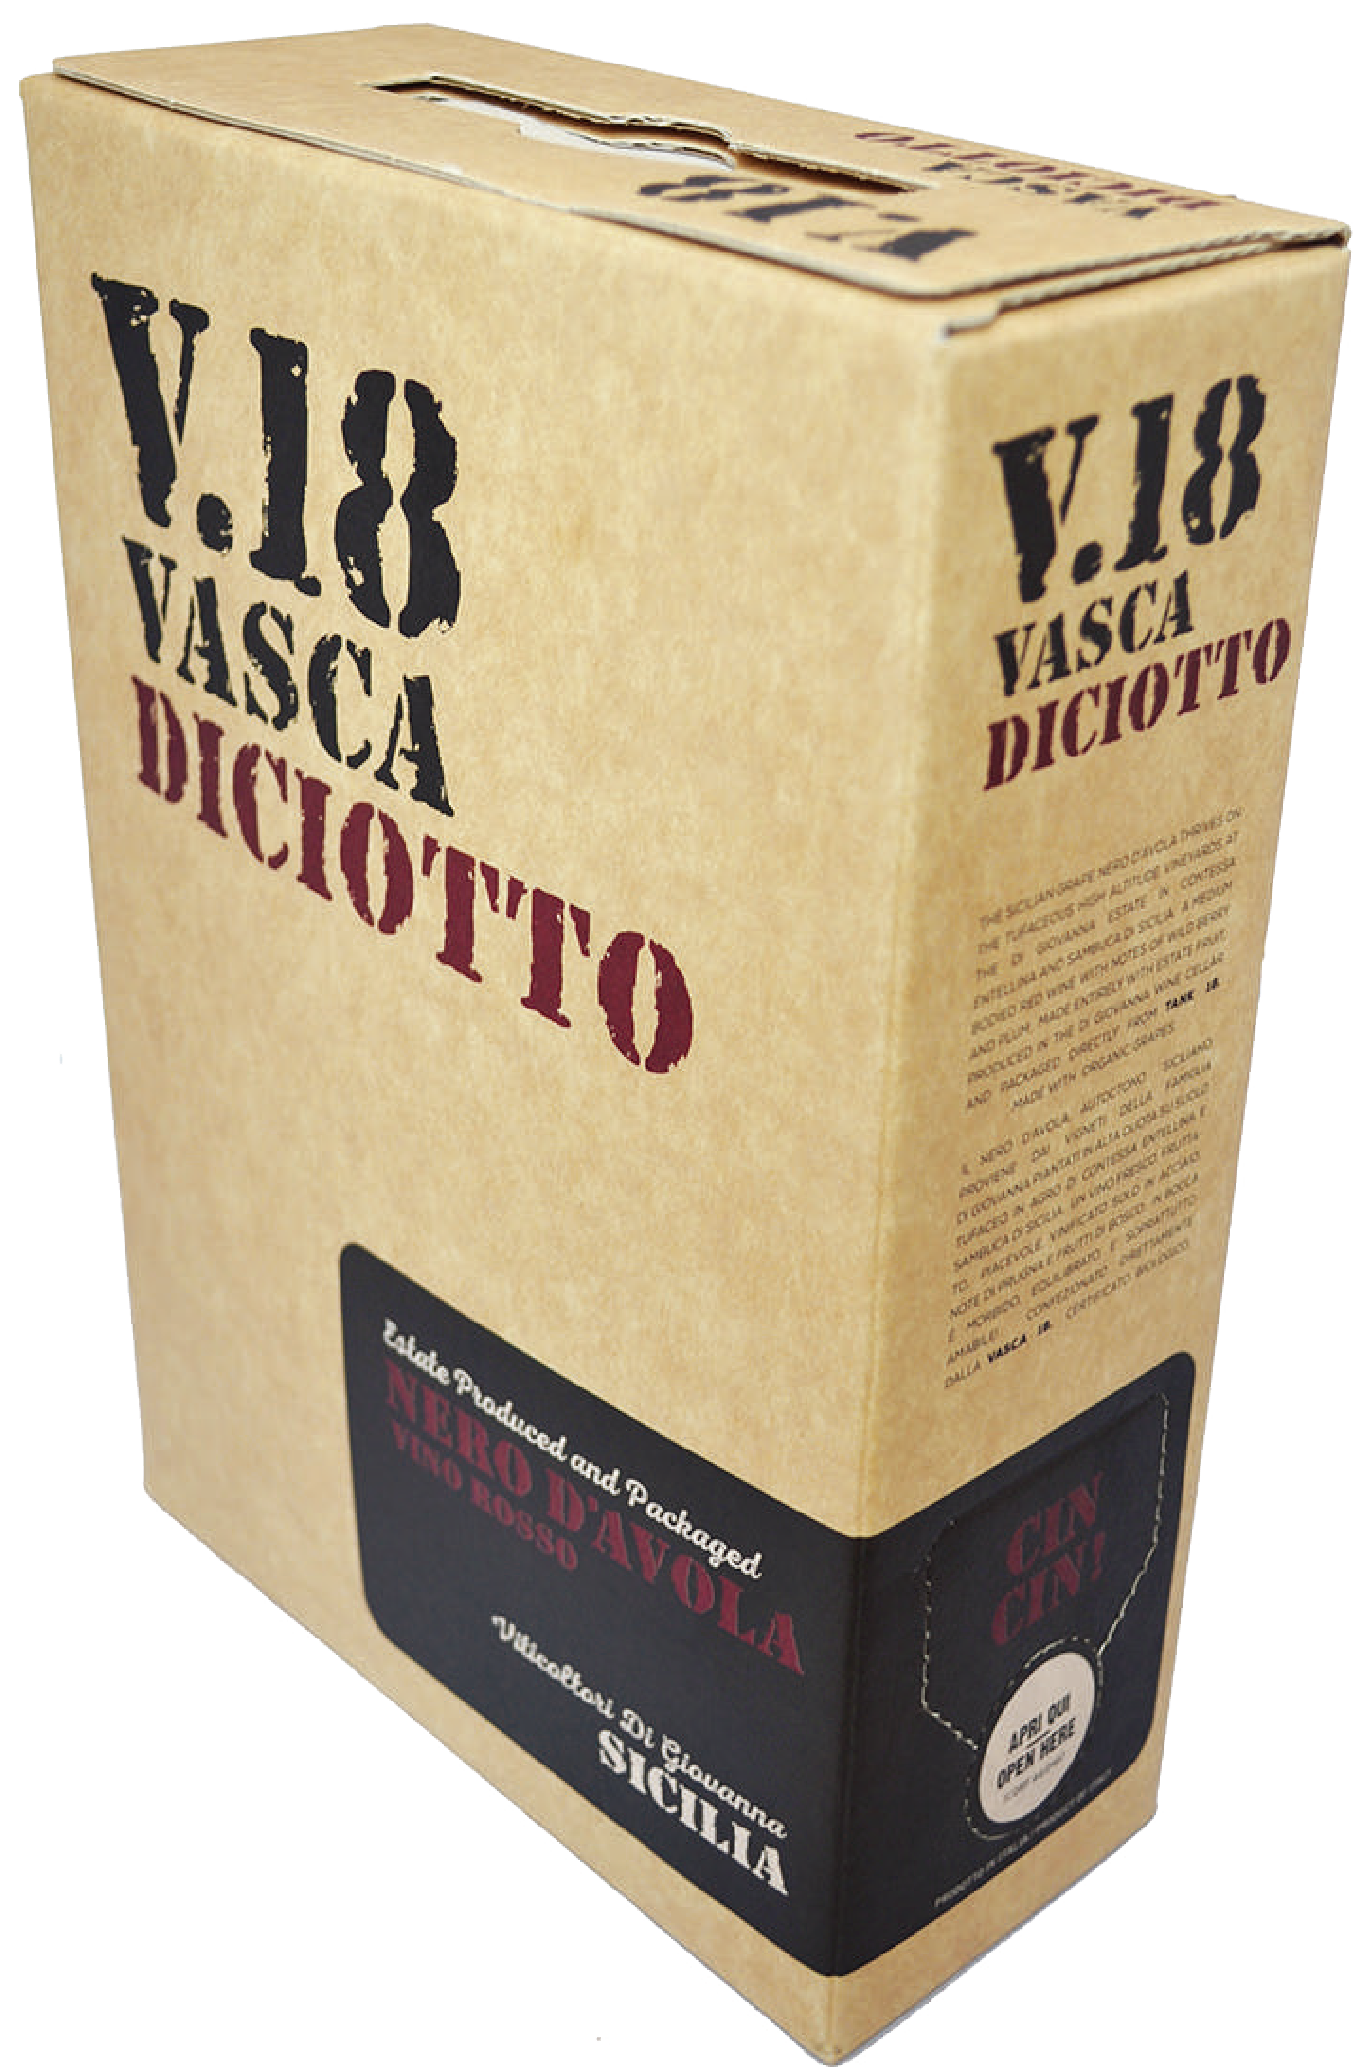 ディ・ジョヴァンナ　V.18(ヴァスカ・ディチョット)ネロ・ダヴォラ　3000ml 箱入り　（赤） 2021 